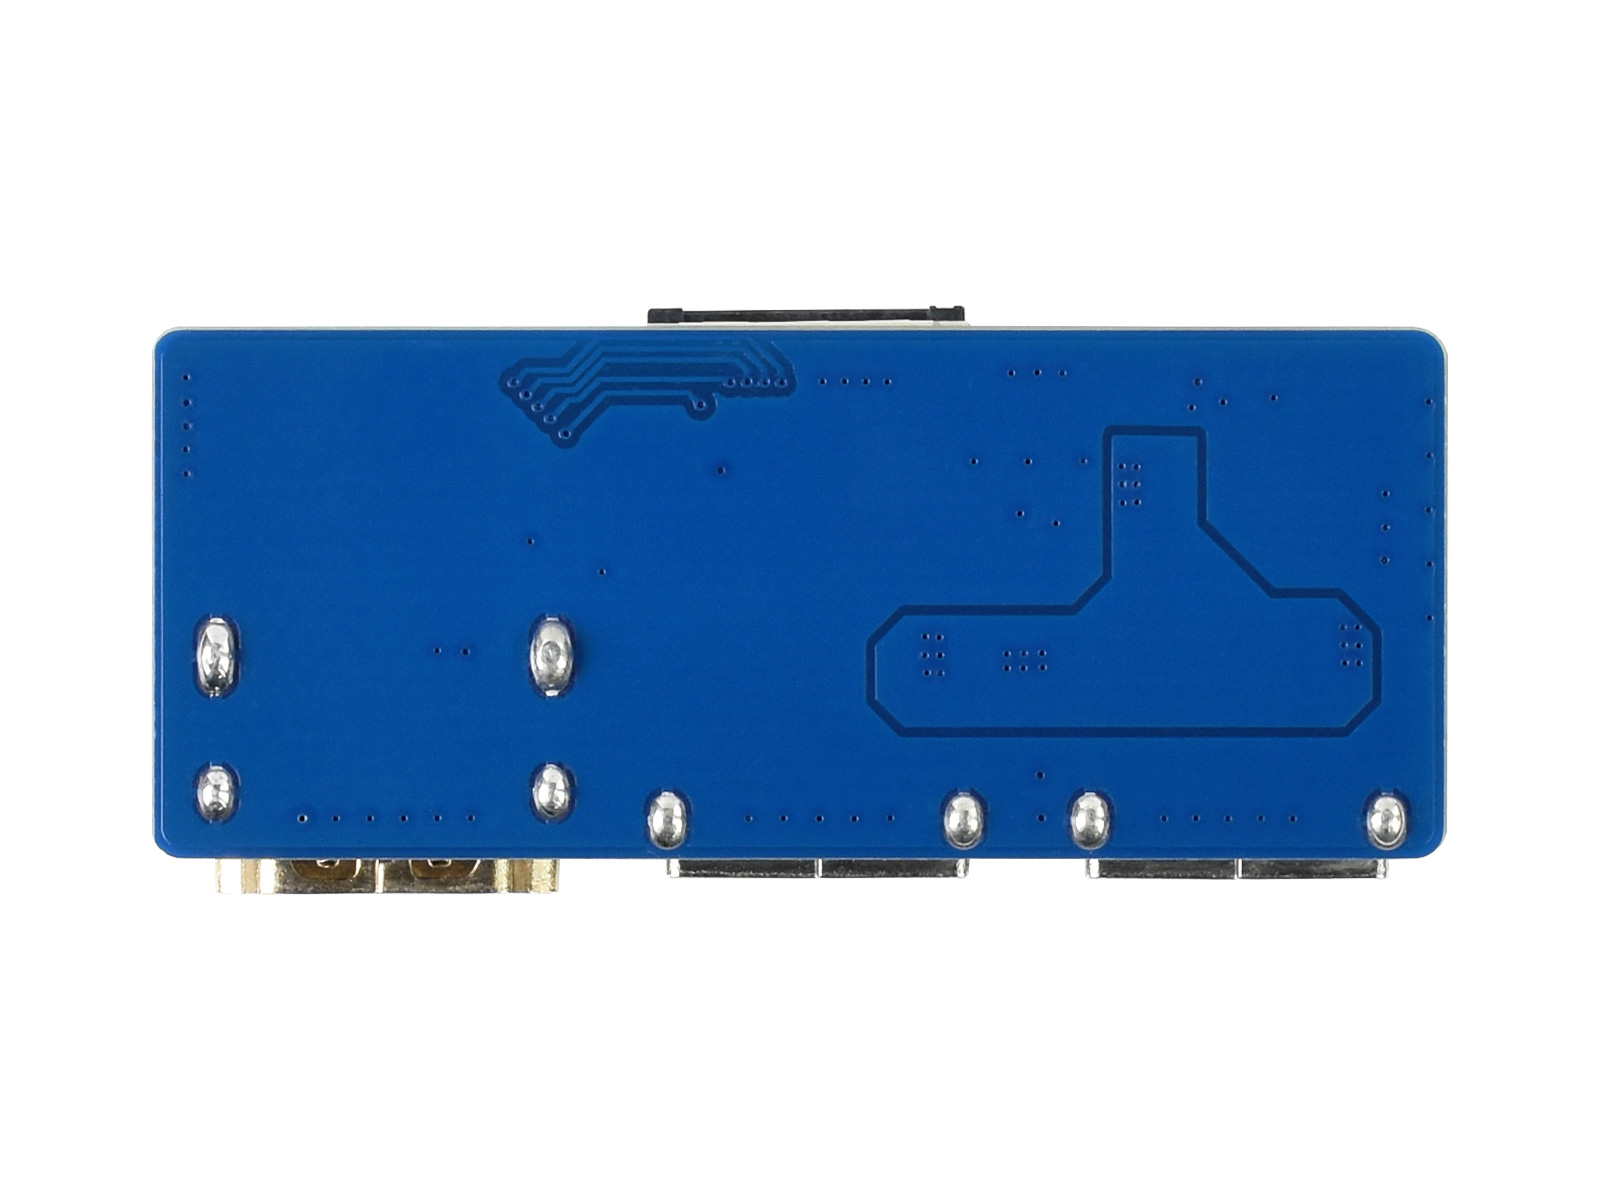 Adaptador USB a HDMI - XHV1-1056-BLK - MaxiTec